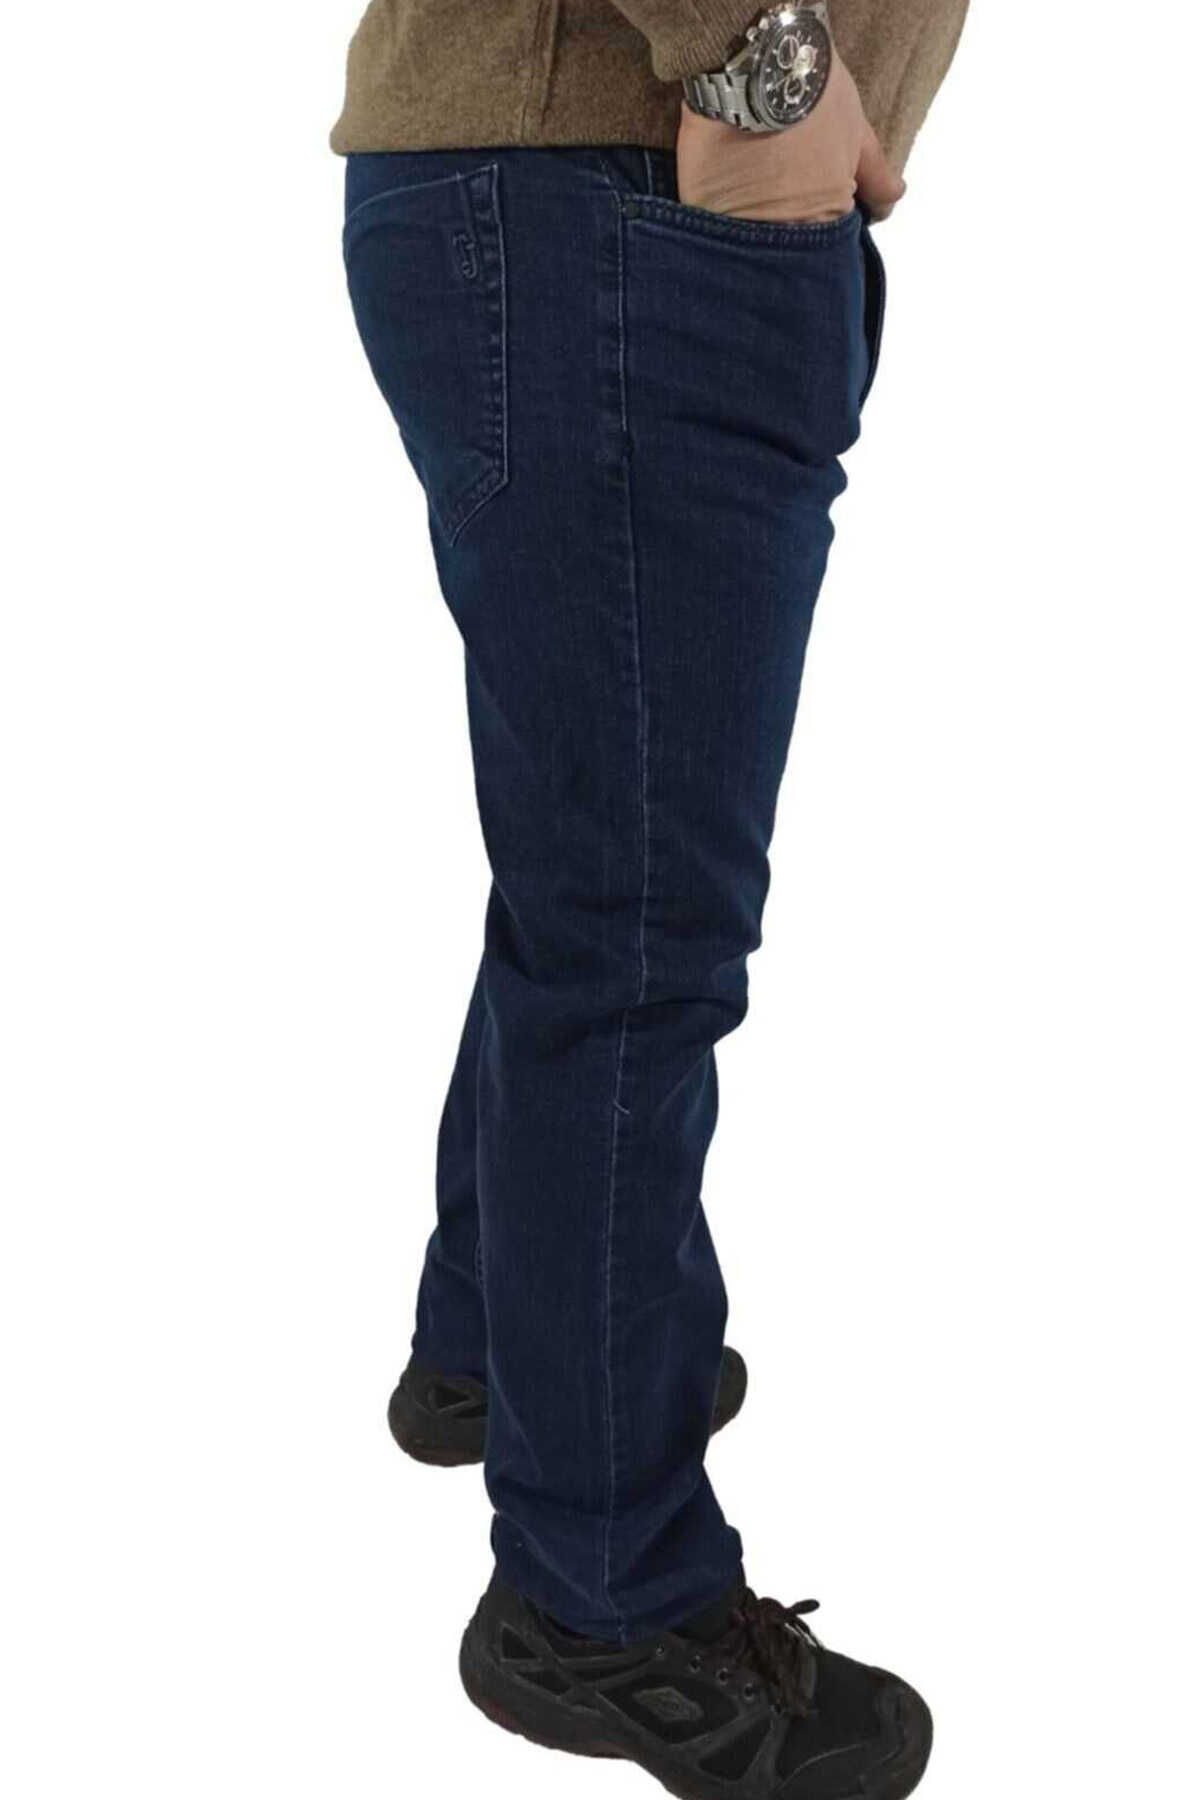 شلوار جین مردانه سایز بزرگ آبی تیره 